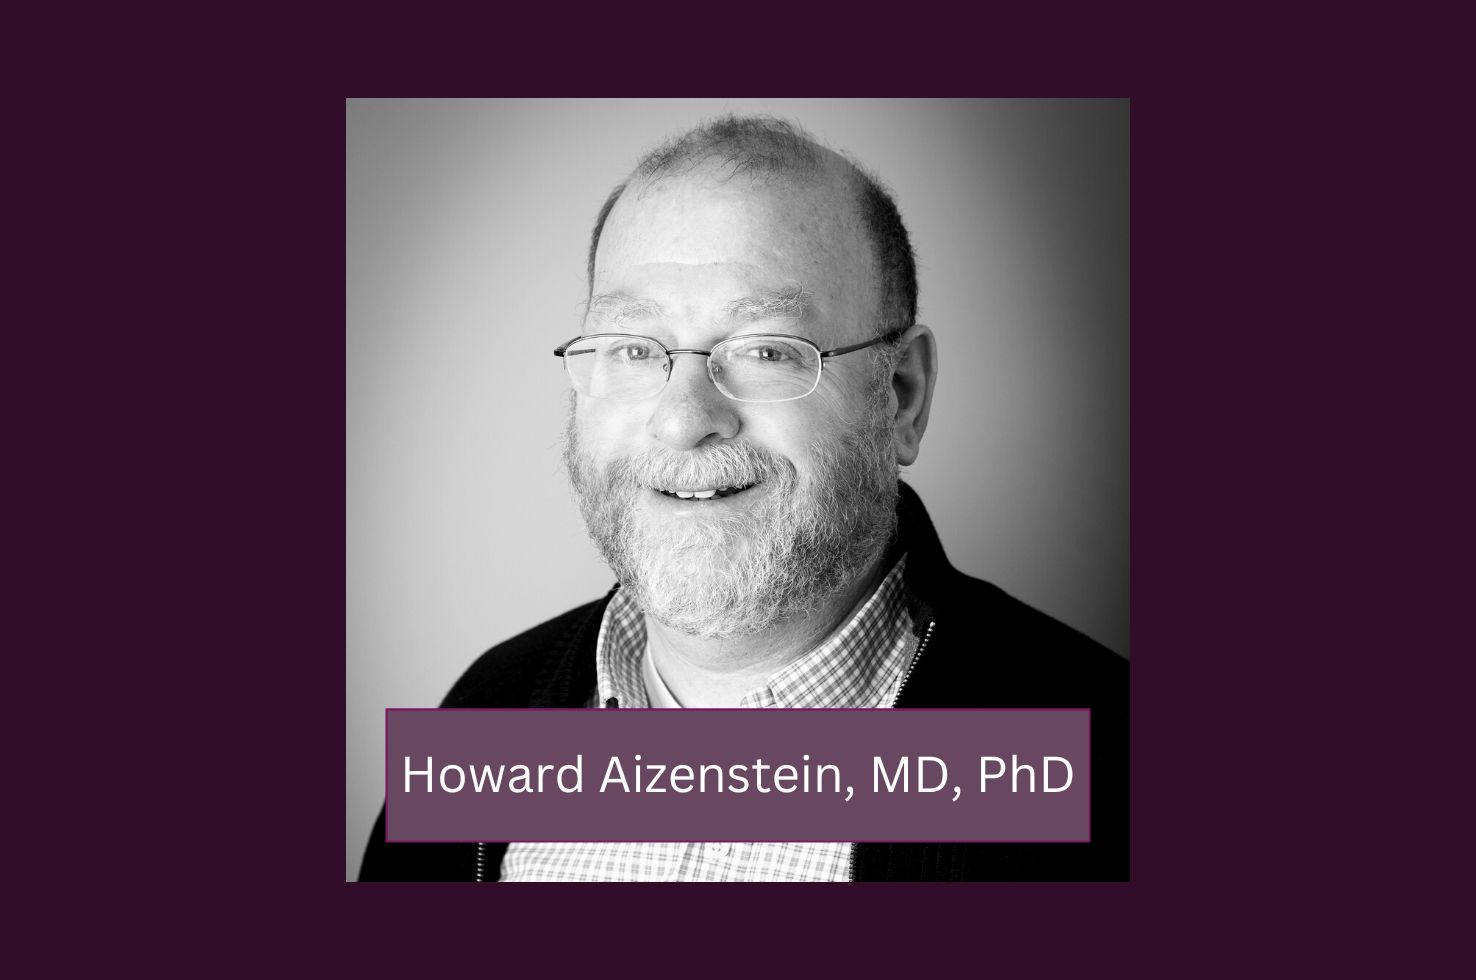 Dr. Howard Aizenstein